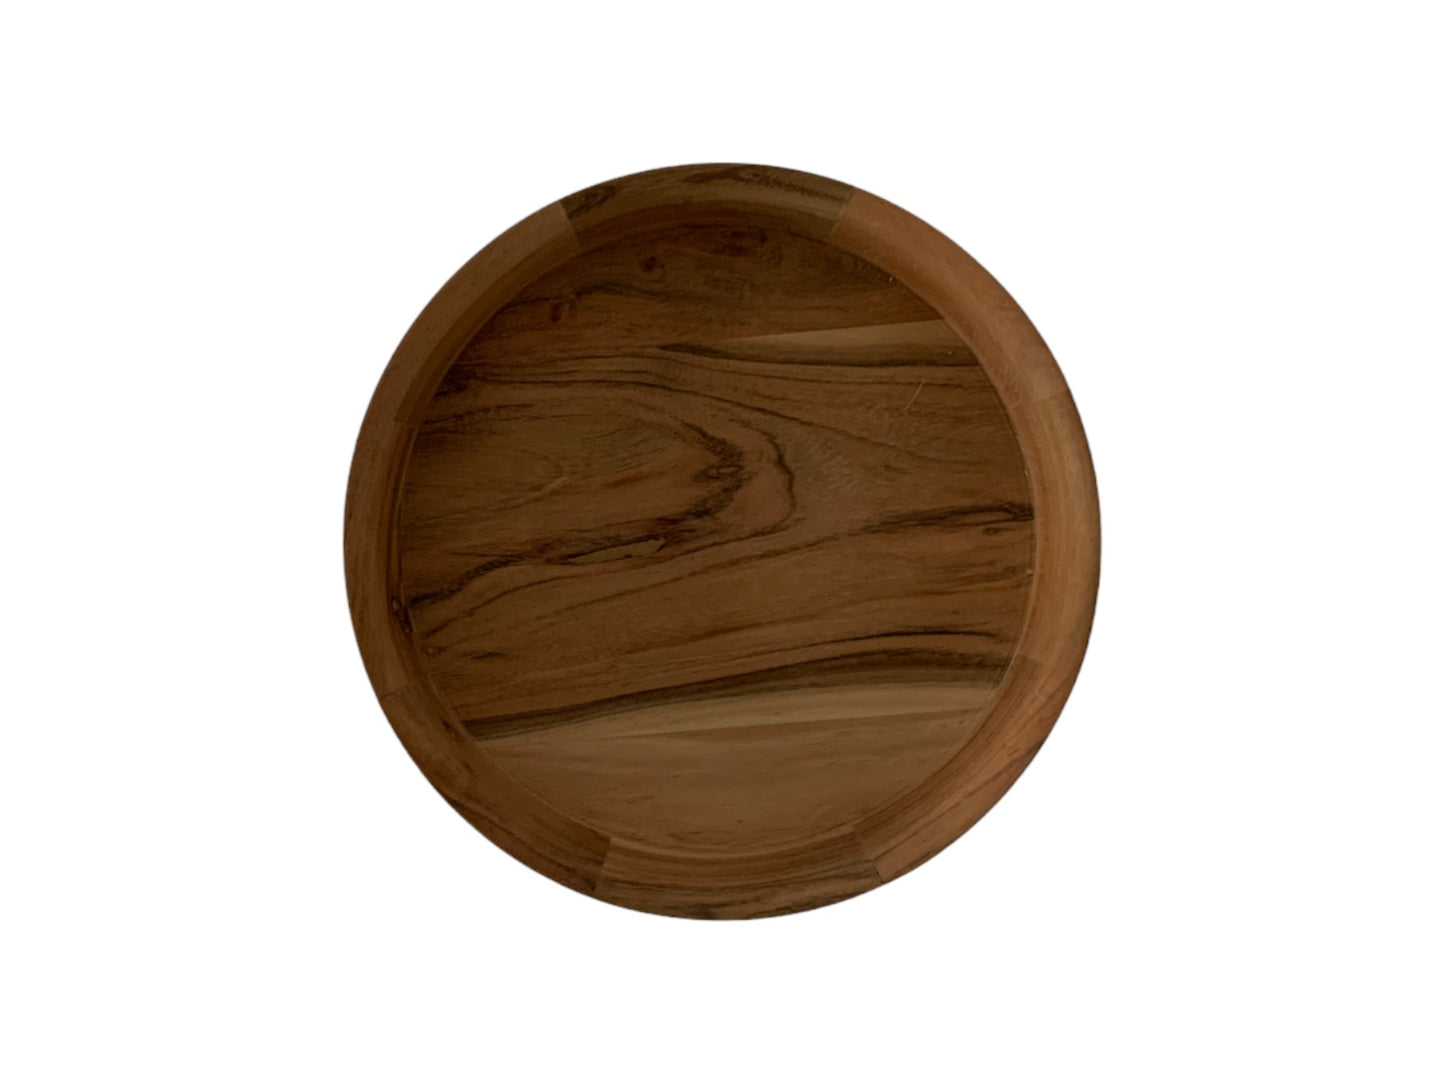 schaal acaciahout diameter 35cm met een brede opstaande rand van 6cm in naturel hout kleur van boven gefotografeerd